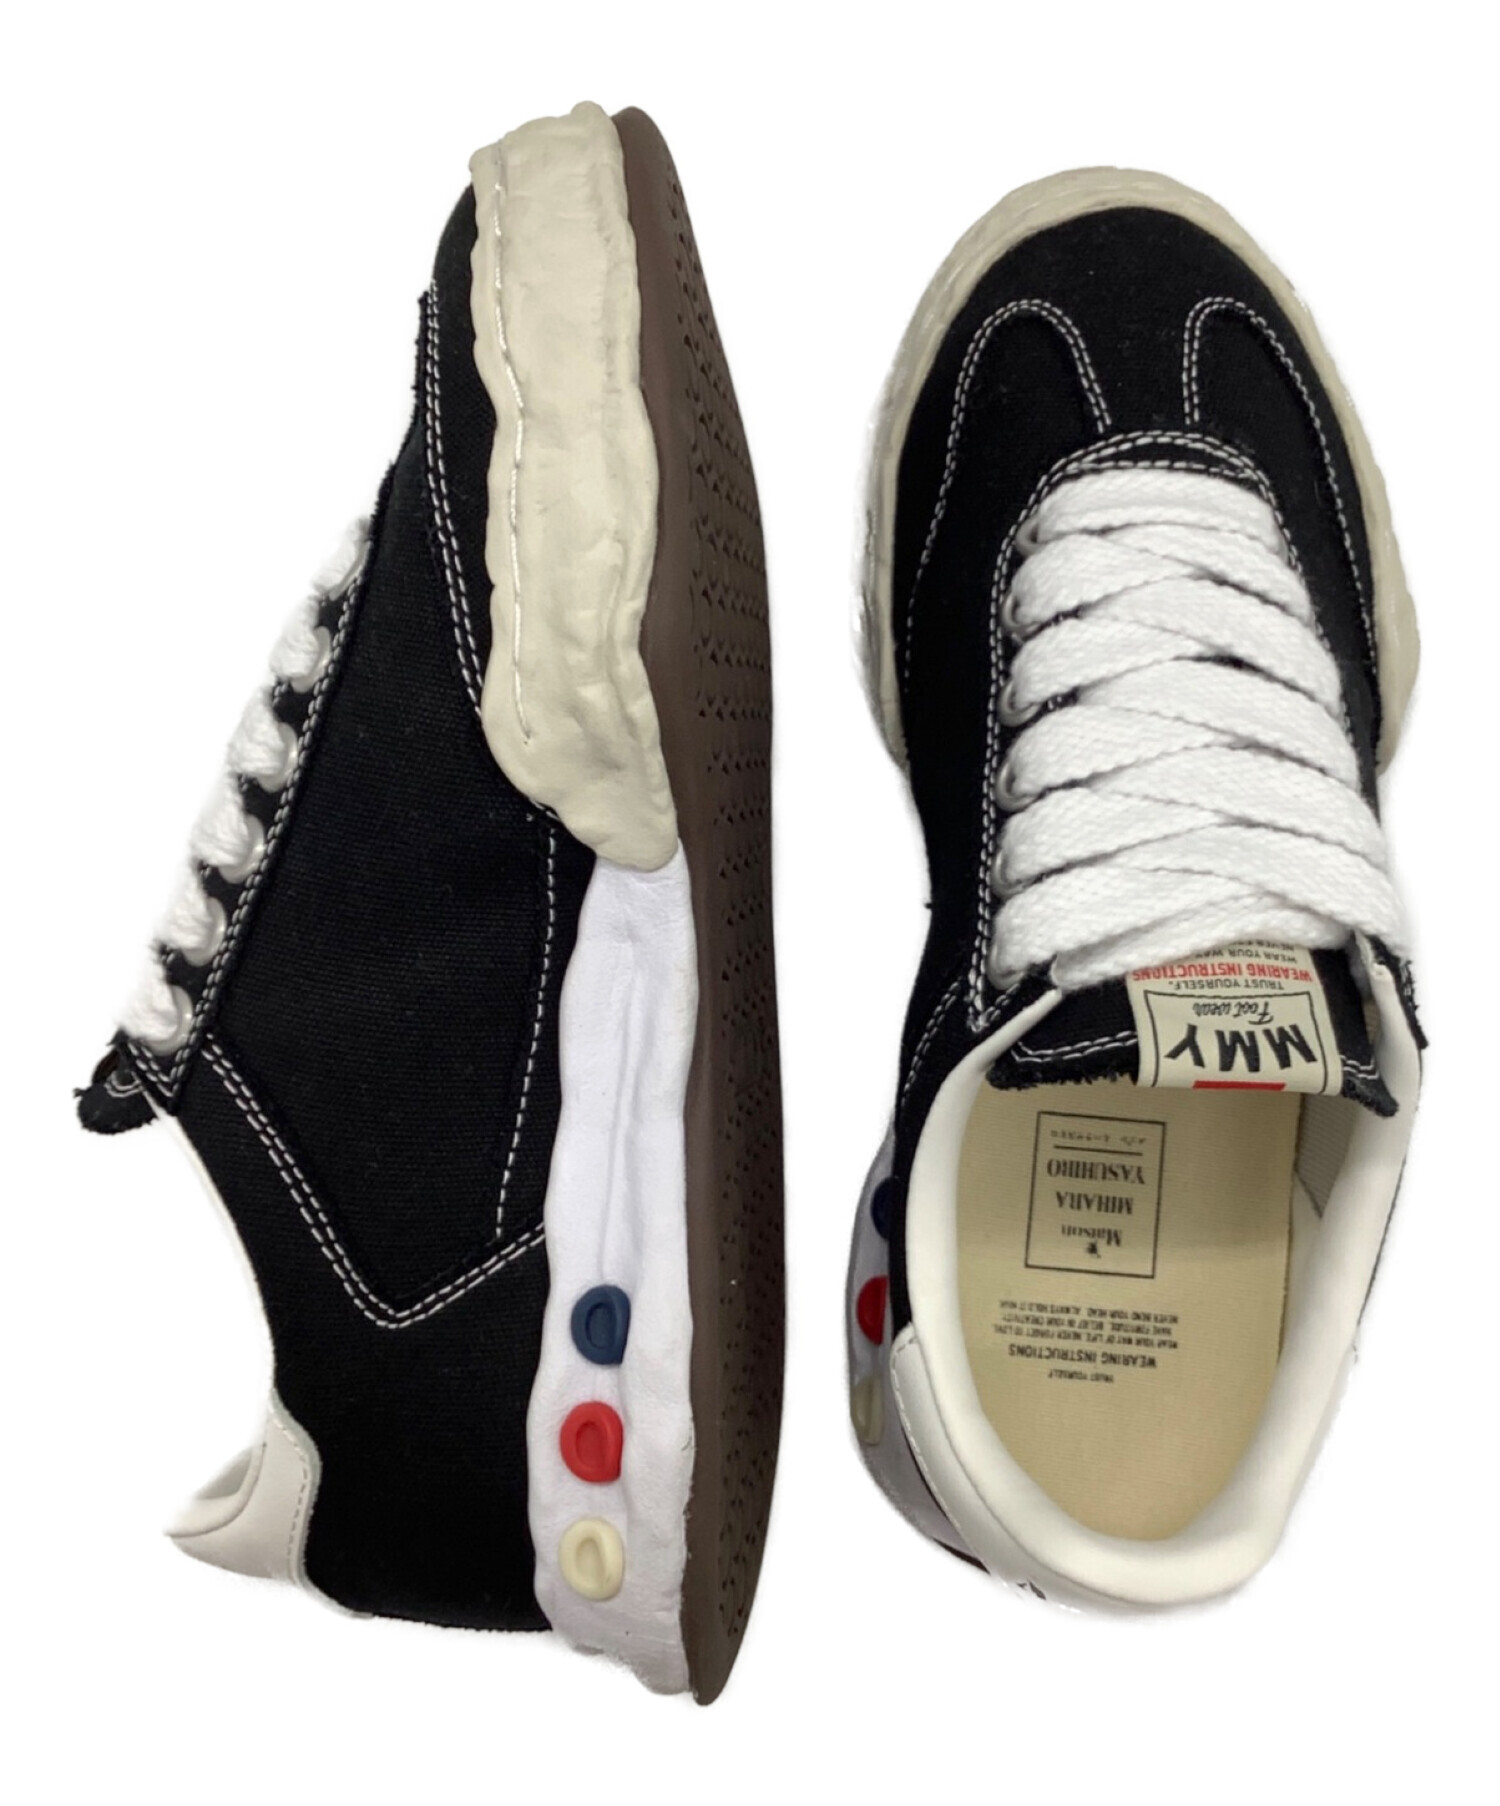 Maison MIHARA YASUHIRO (メゾン ミハラ ヤスヒロ) original sole canvas Low-Top sneaker  ブラック×ホワイト サイズ:39